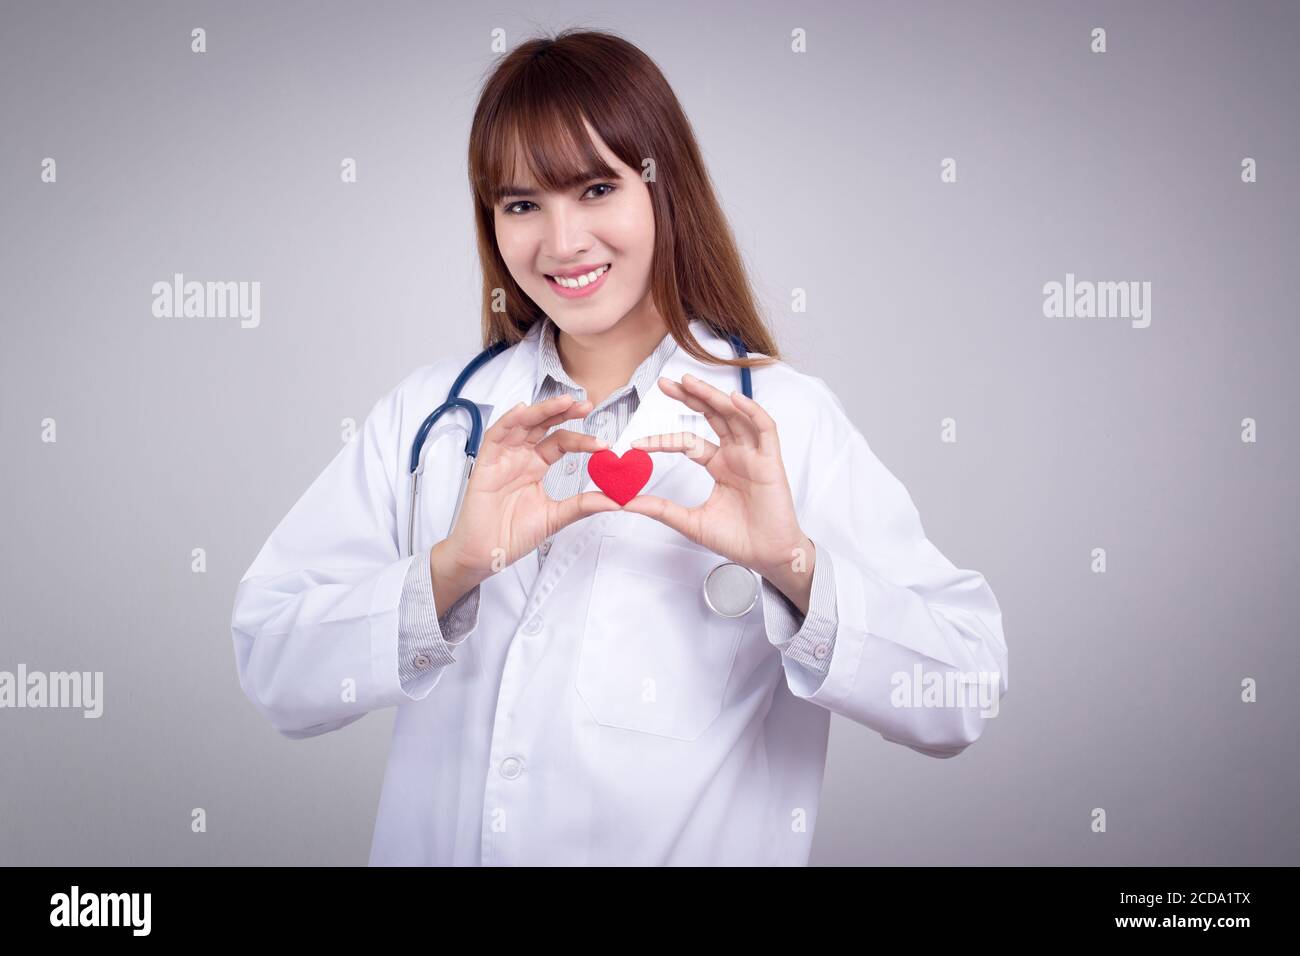 Concetto sano : giovane medico asiatico con cuore rosso in mano Foto Stock